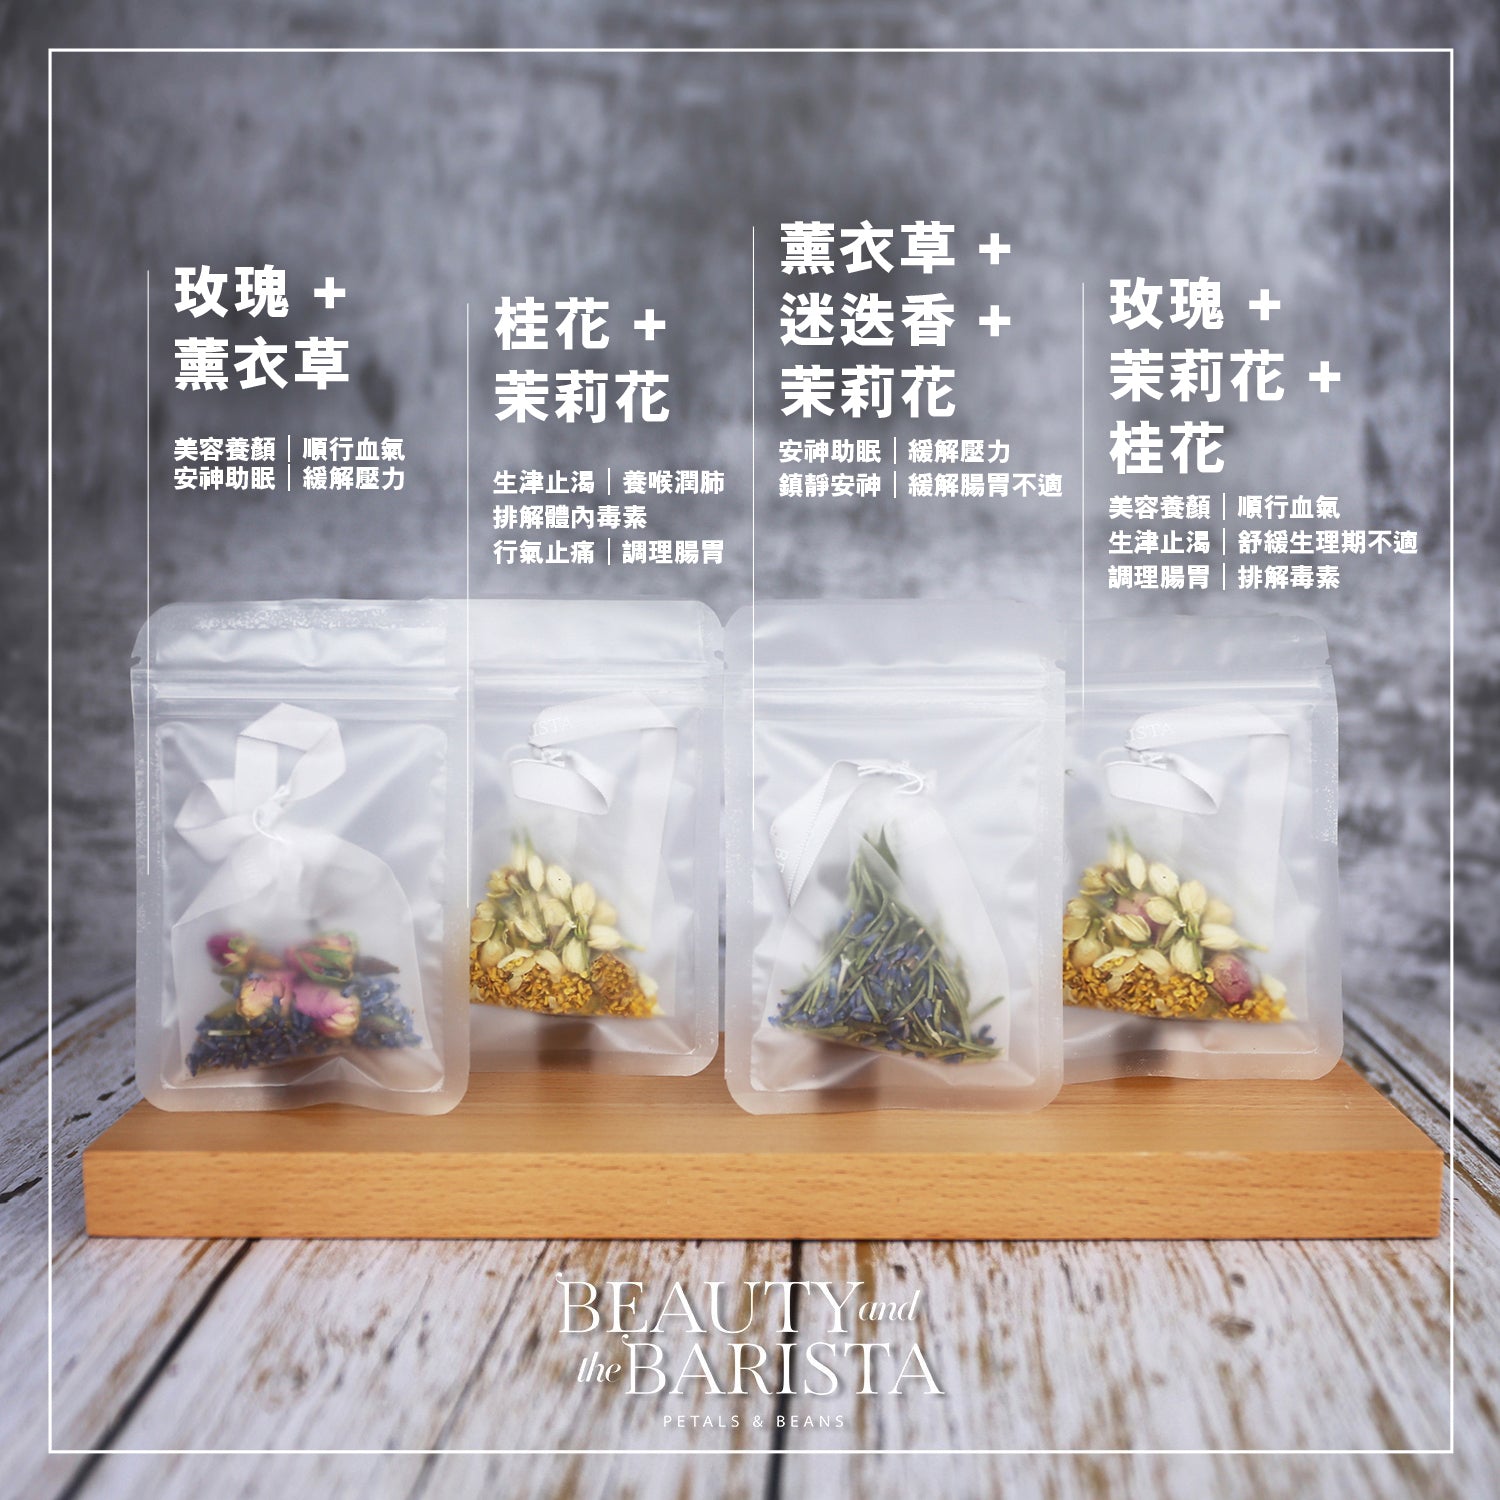 花草茶魔法系列｜玫瑰 + 茉莉花 + 桂花｜樽裝茶包